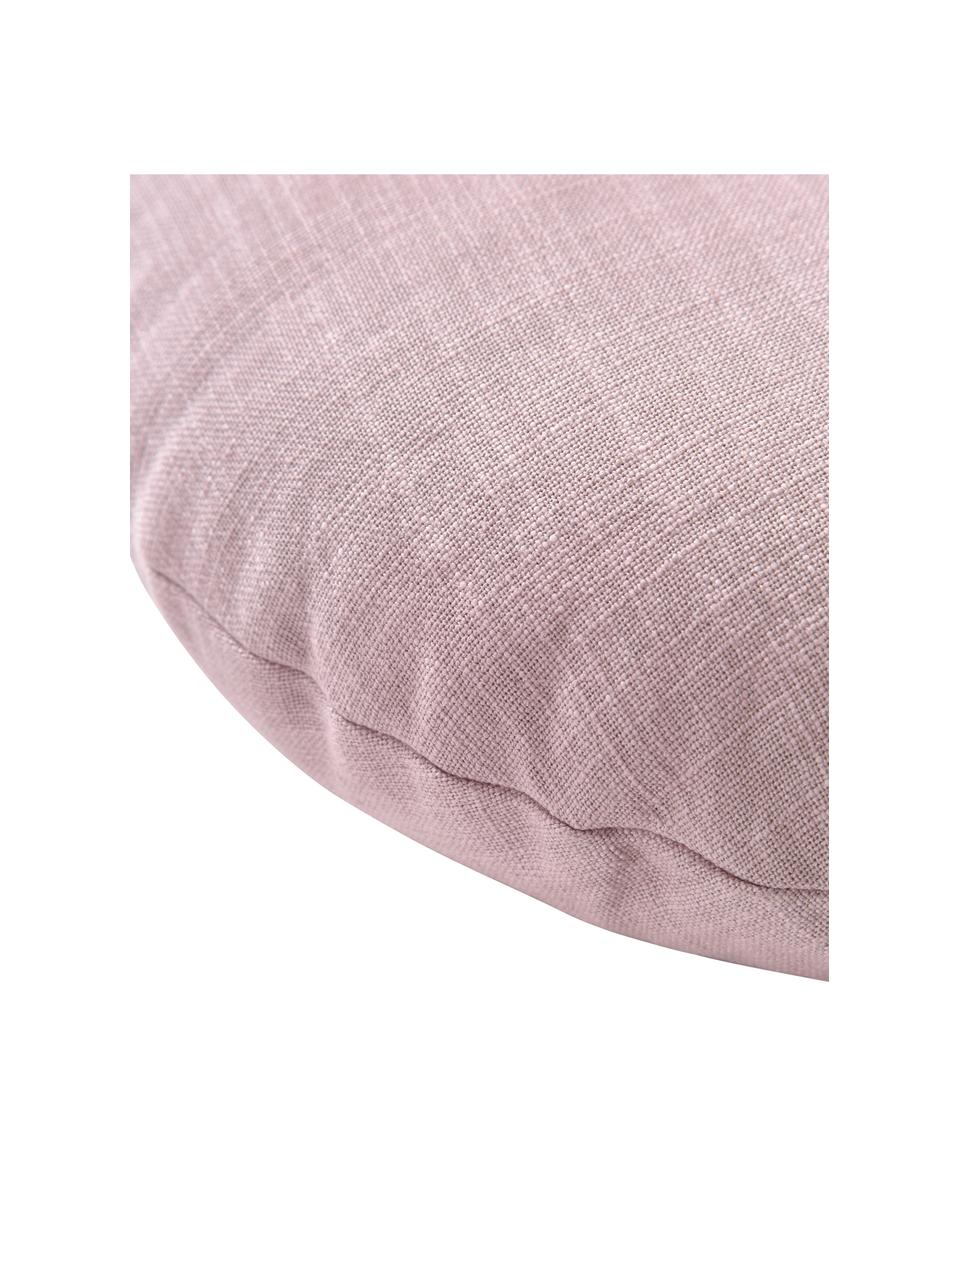 Cuscino imbottito rotondo lilla Devi, Rivestimento: 100% cotone, Rosa, viola, Ø 35 cm